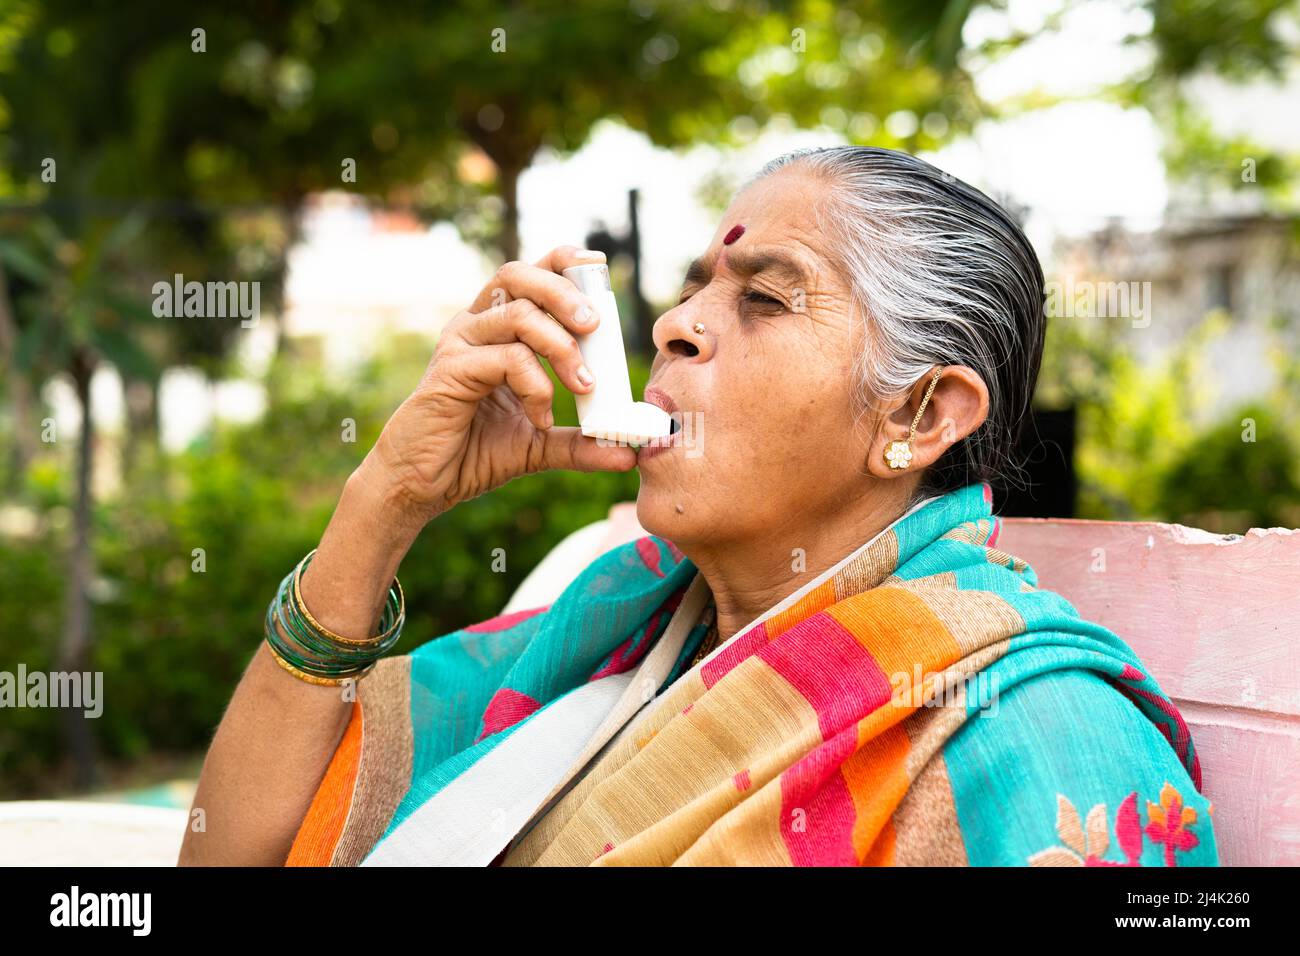 Ältere Frau, die aufgrund einer Allergie Asthma-Inhalator verwendet, während sie im Park sitzt - Konzept, das Auswirkungen von Verschmutzung, Krankheit und Krankheit zeigt Stockfoto